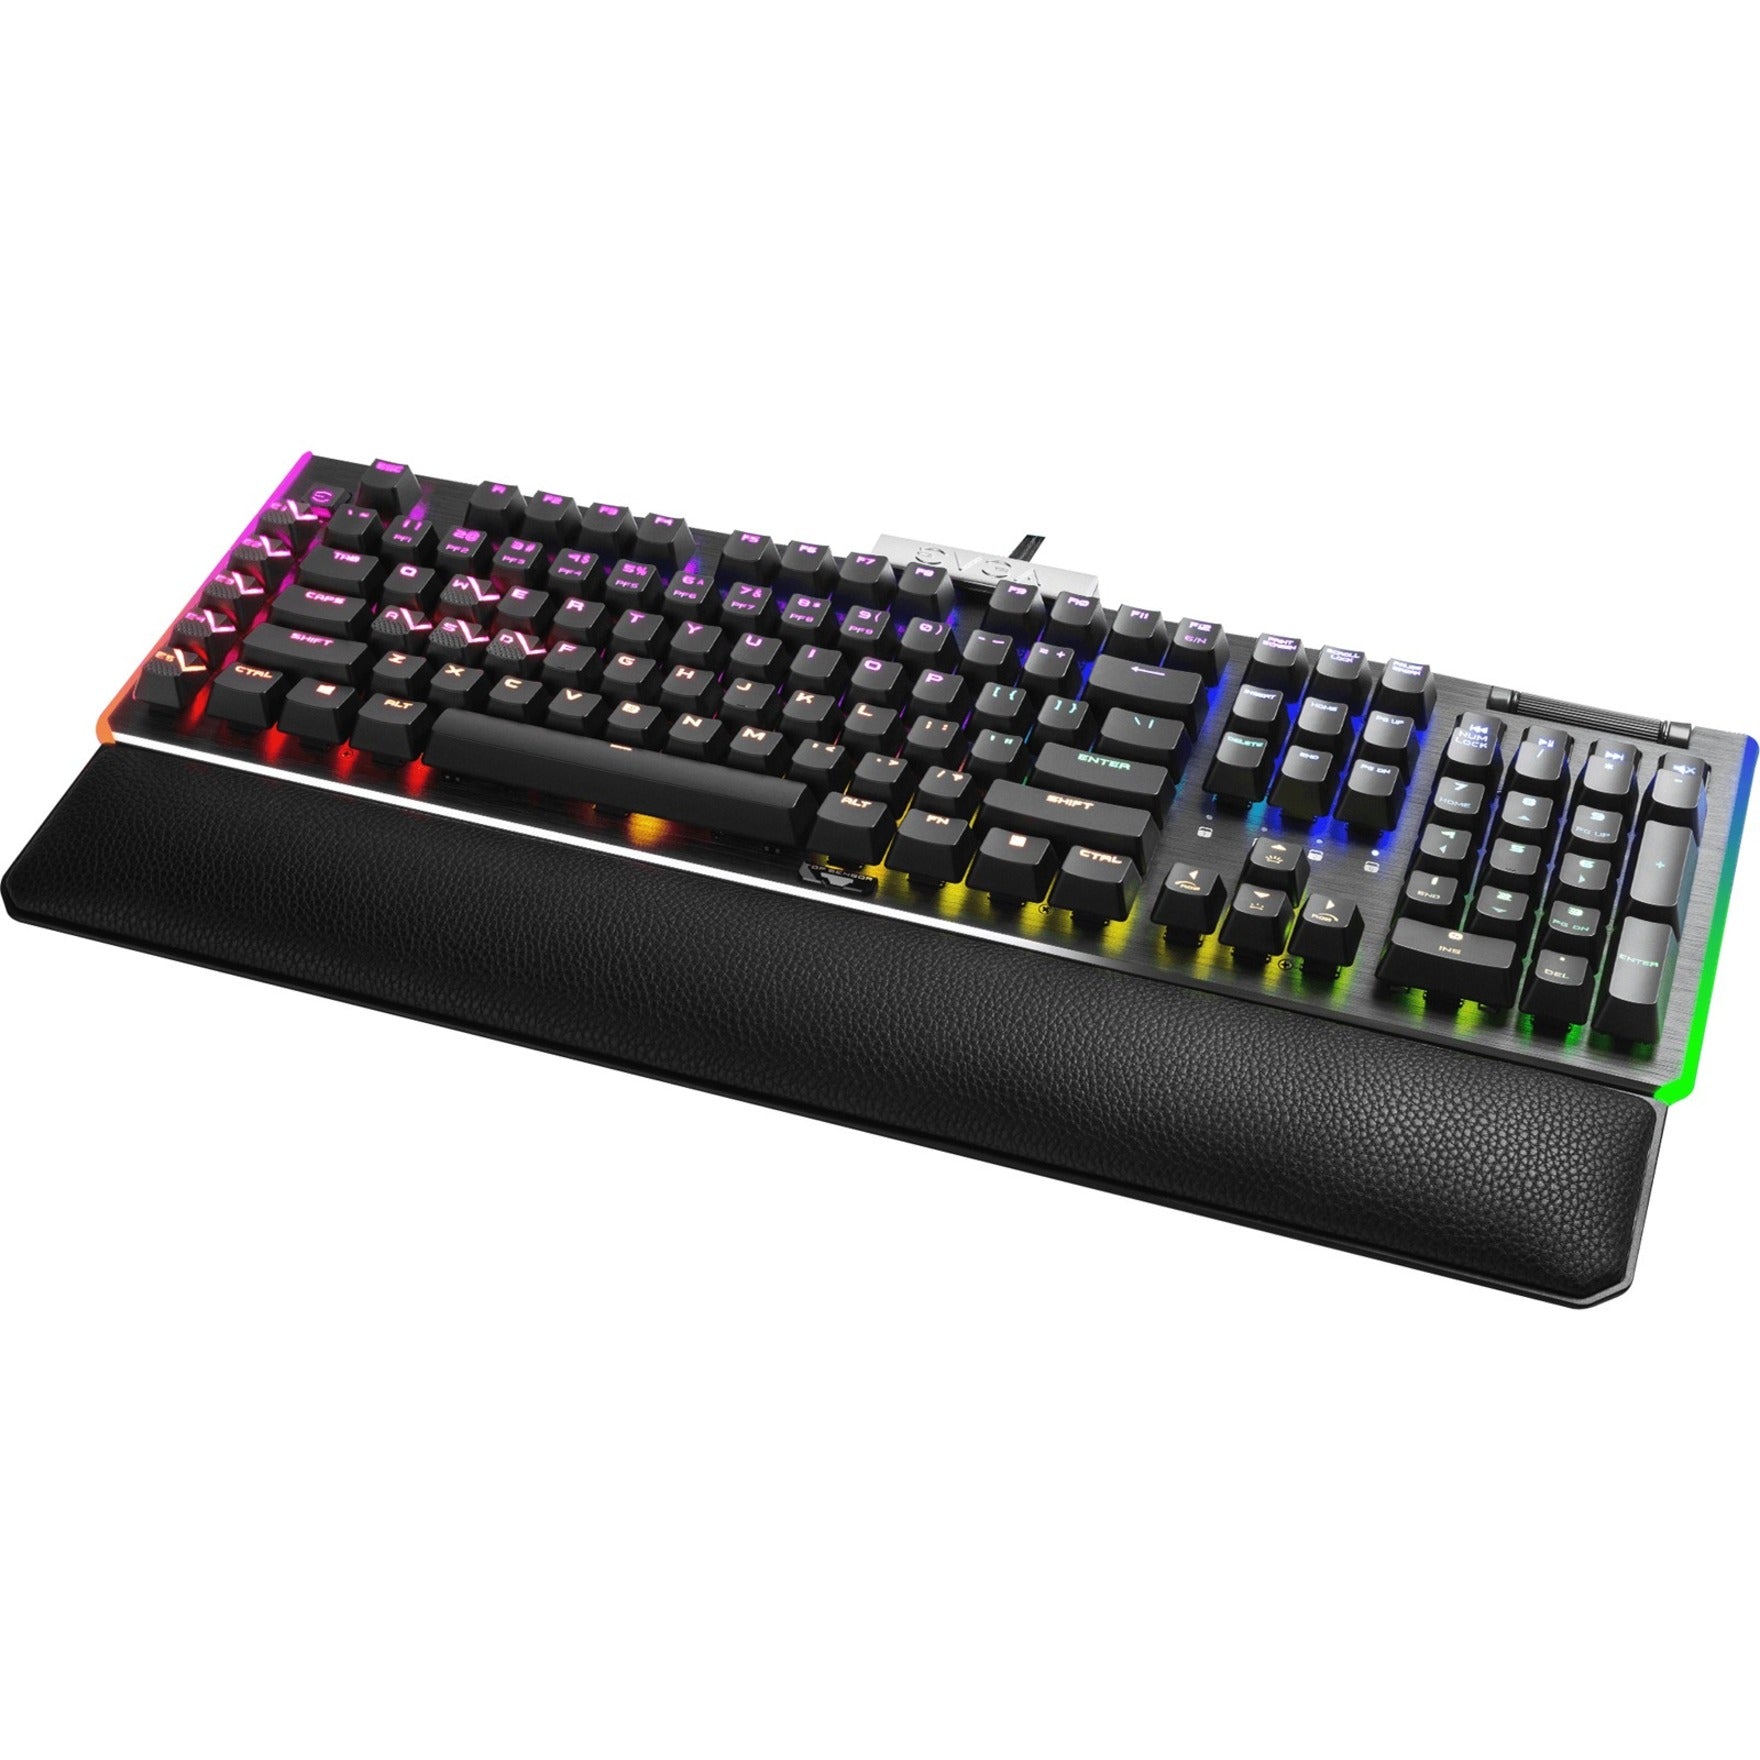 EVGA 812-W1-20US-KR Z20 Gaming Keyboard, RGB Lighting, Adjustable Backlighting, Fingerprint Sensor, Palm Rest